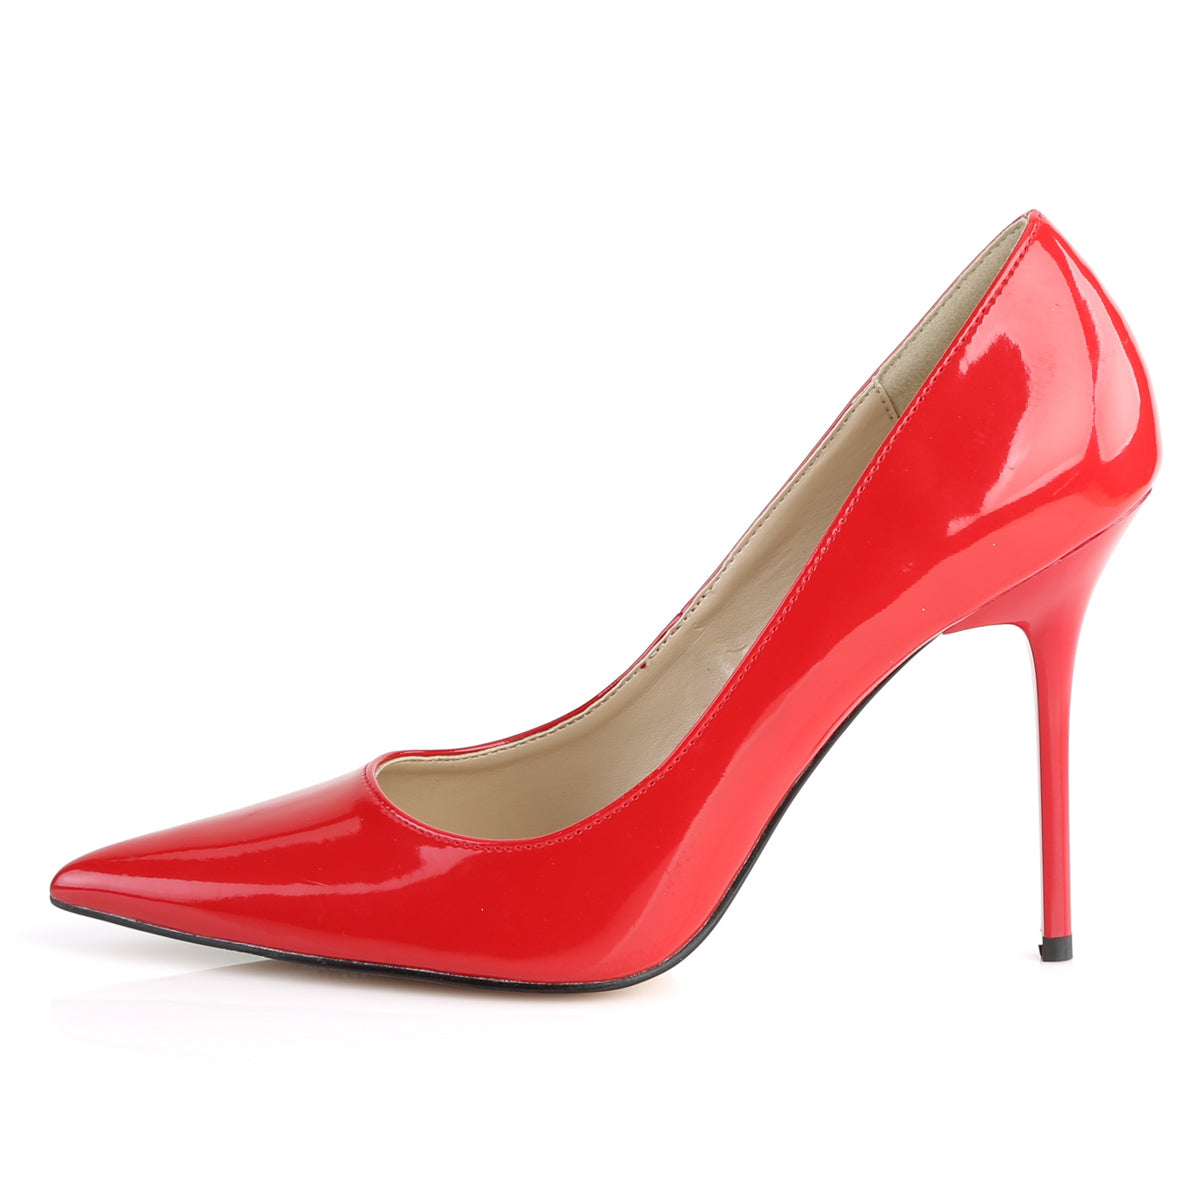 CLASSIQUE-20 Pleaser Red Patent Single Sole Shoes [Fetish Shoes]